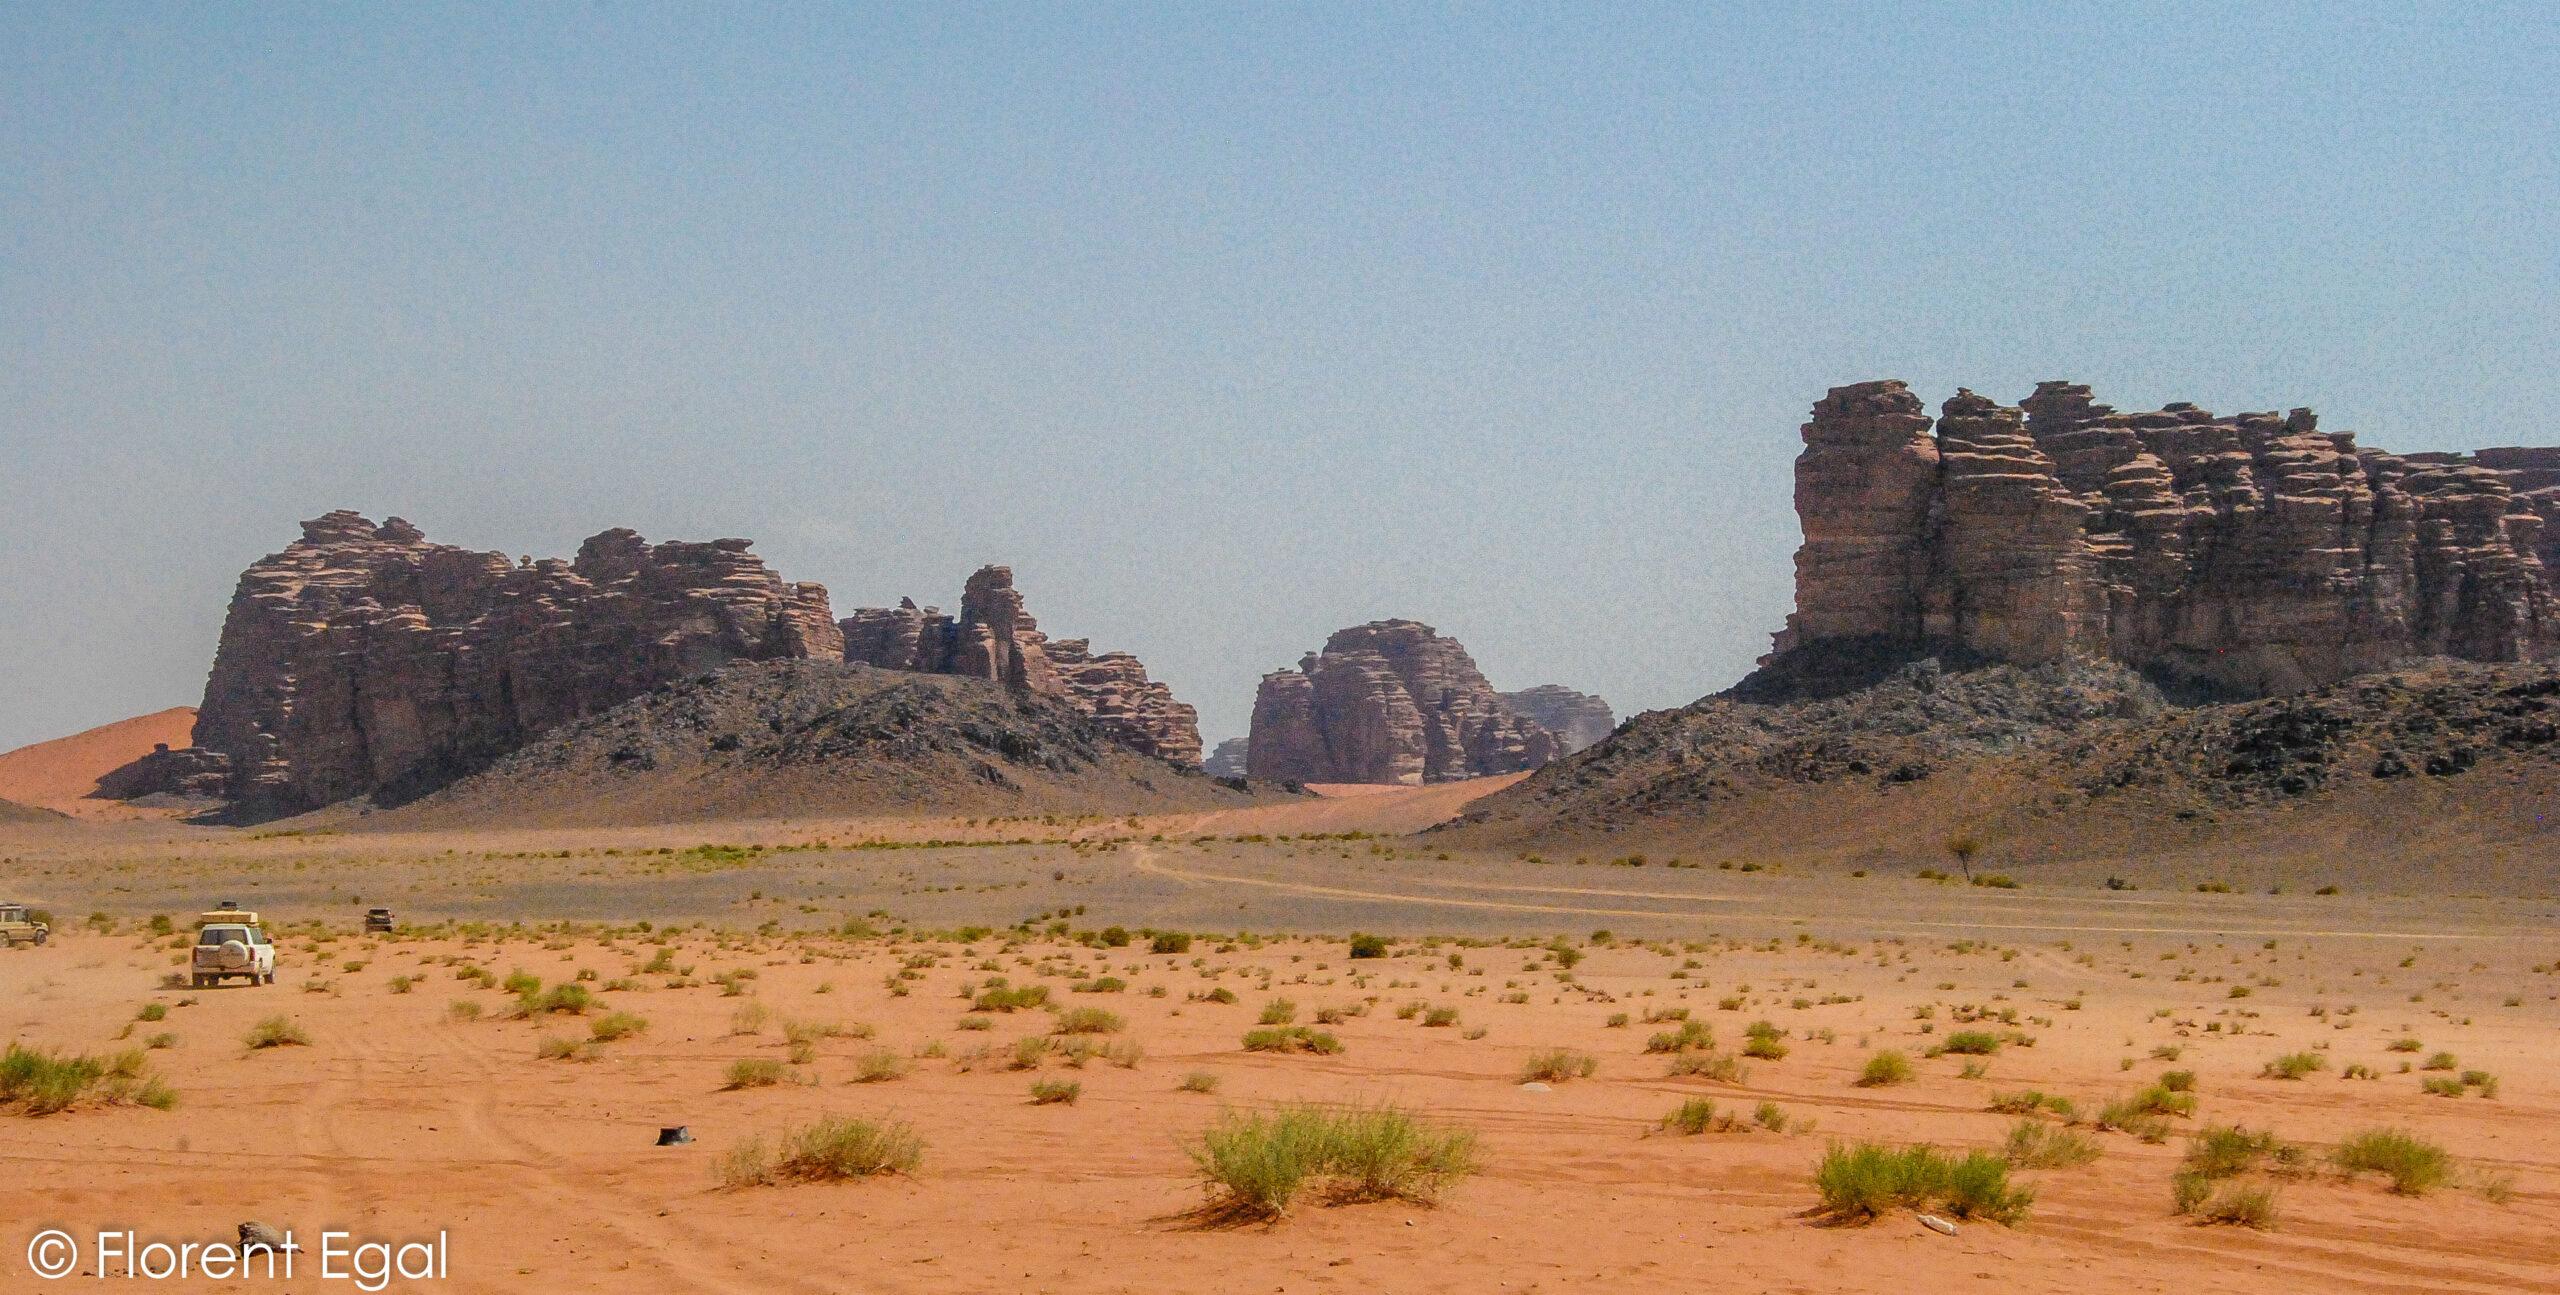 Saudo Arabija: ką pamatyti ir tikėtis dykumos ir uolų žemėje?